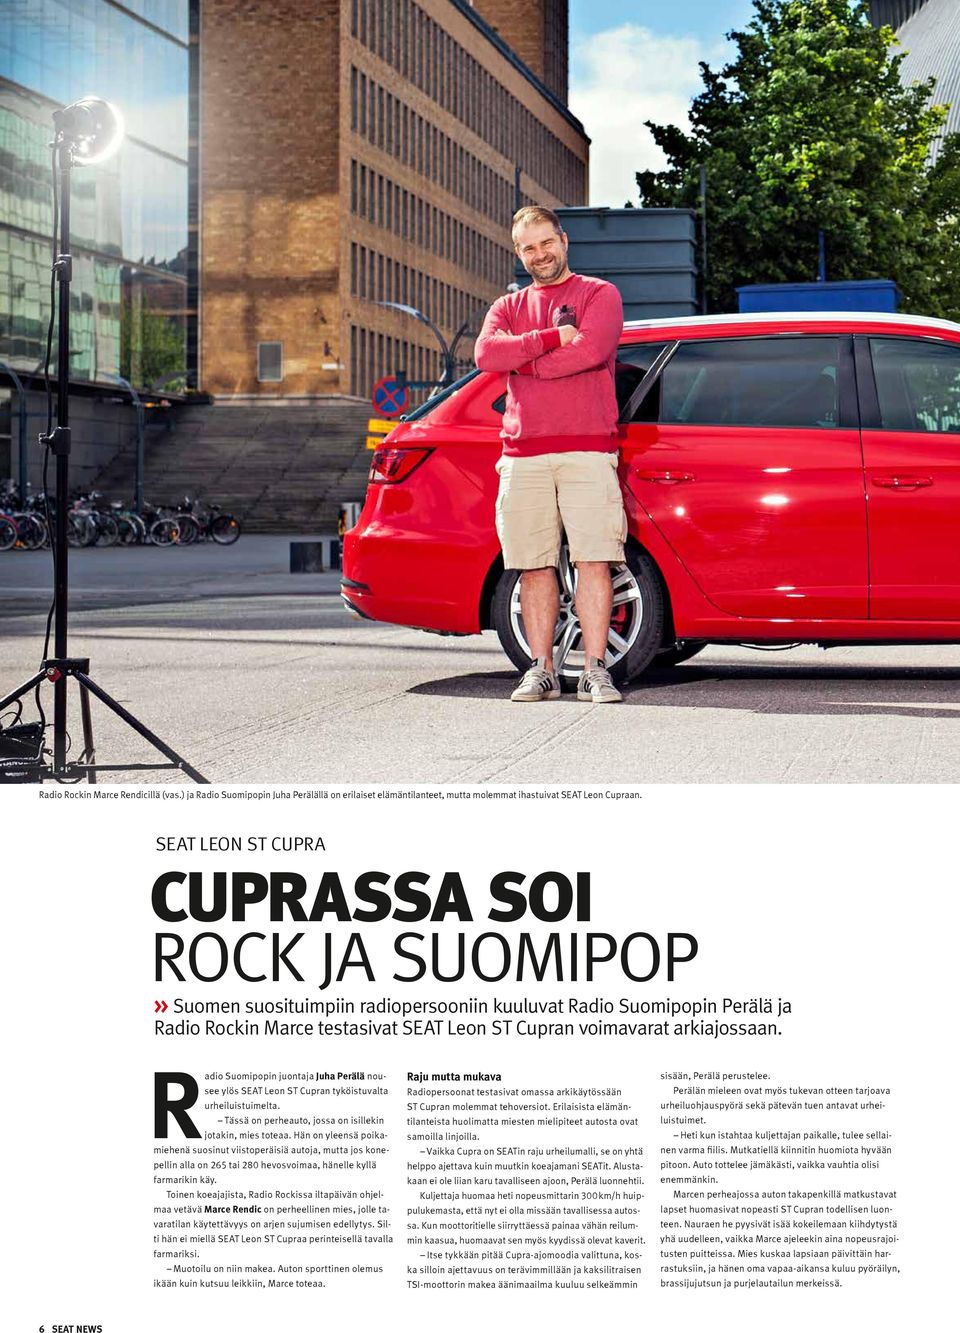 Radio Suomipopin juontaja Juha Perälä nousee ylös SEAT Leon ST Cupran tyköistuvalta urheiluistuimelta. Tässä on perheauto, jossa on isillekin jotakin, mies toteaa.